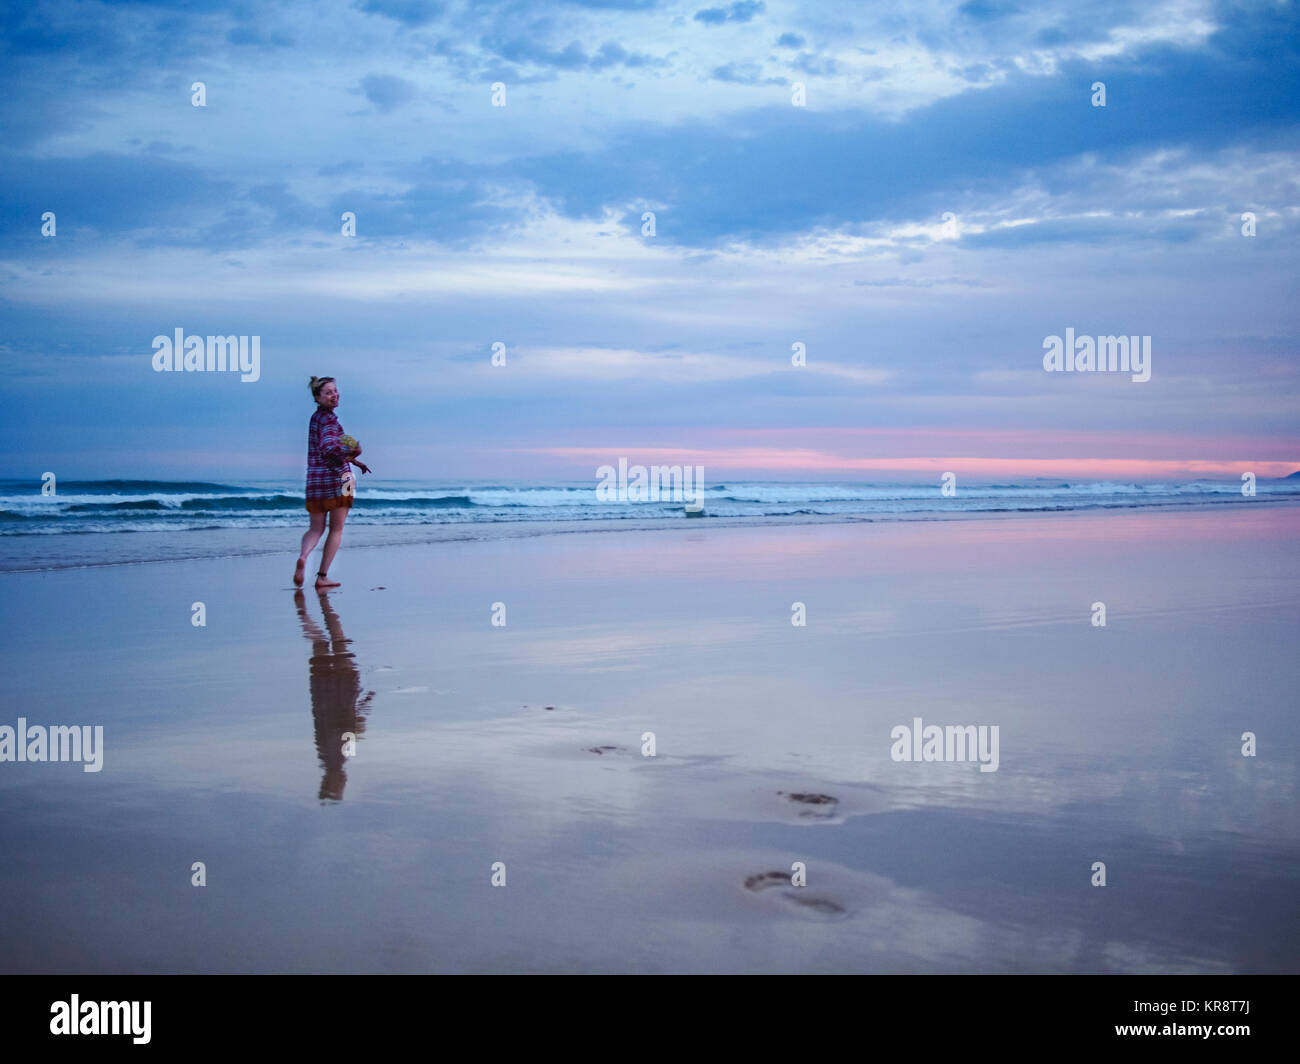 L'Australie, Nouvelle Galles du Sud, Woman standing on beach at Dusk Banque D'Images